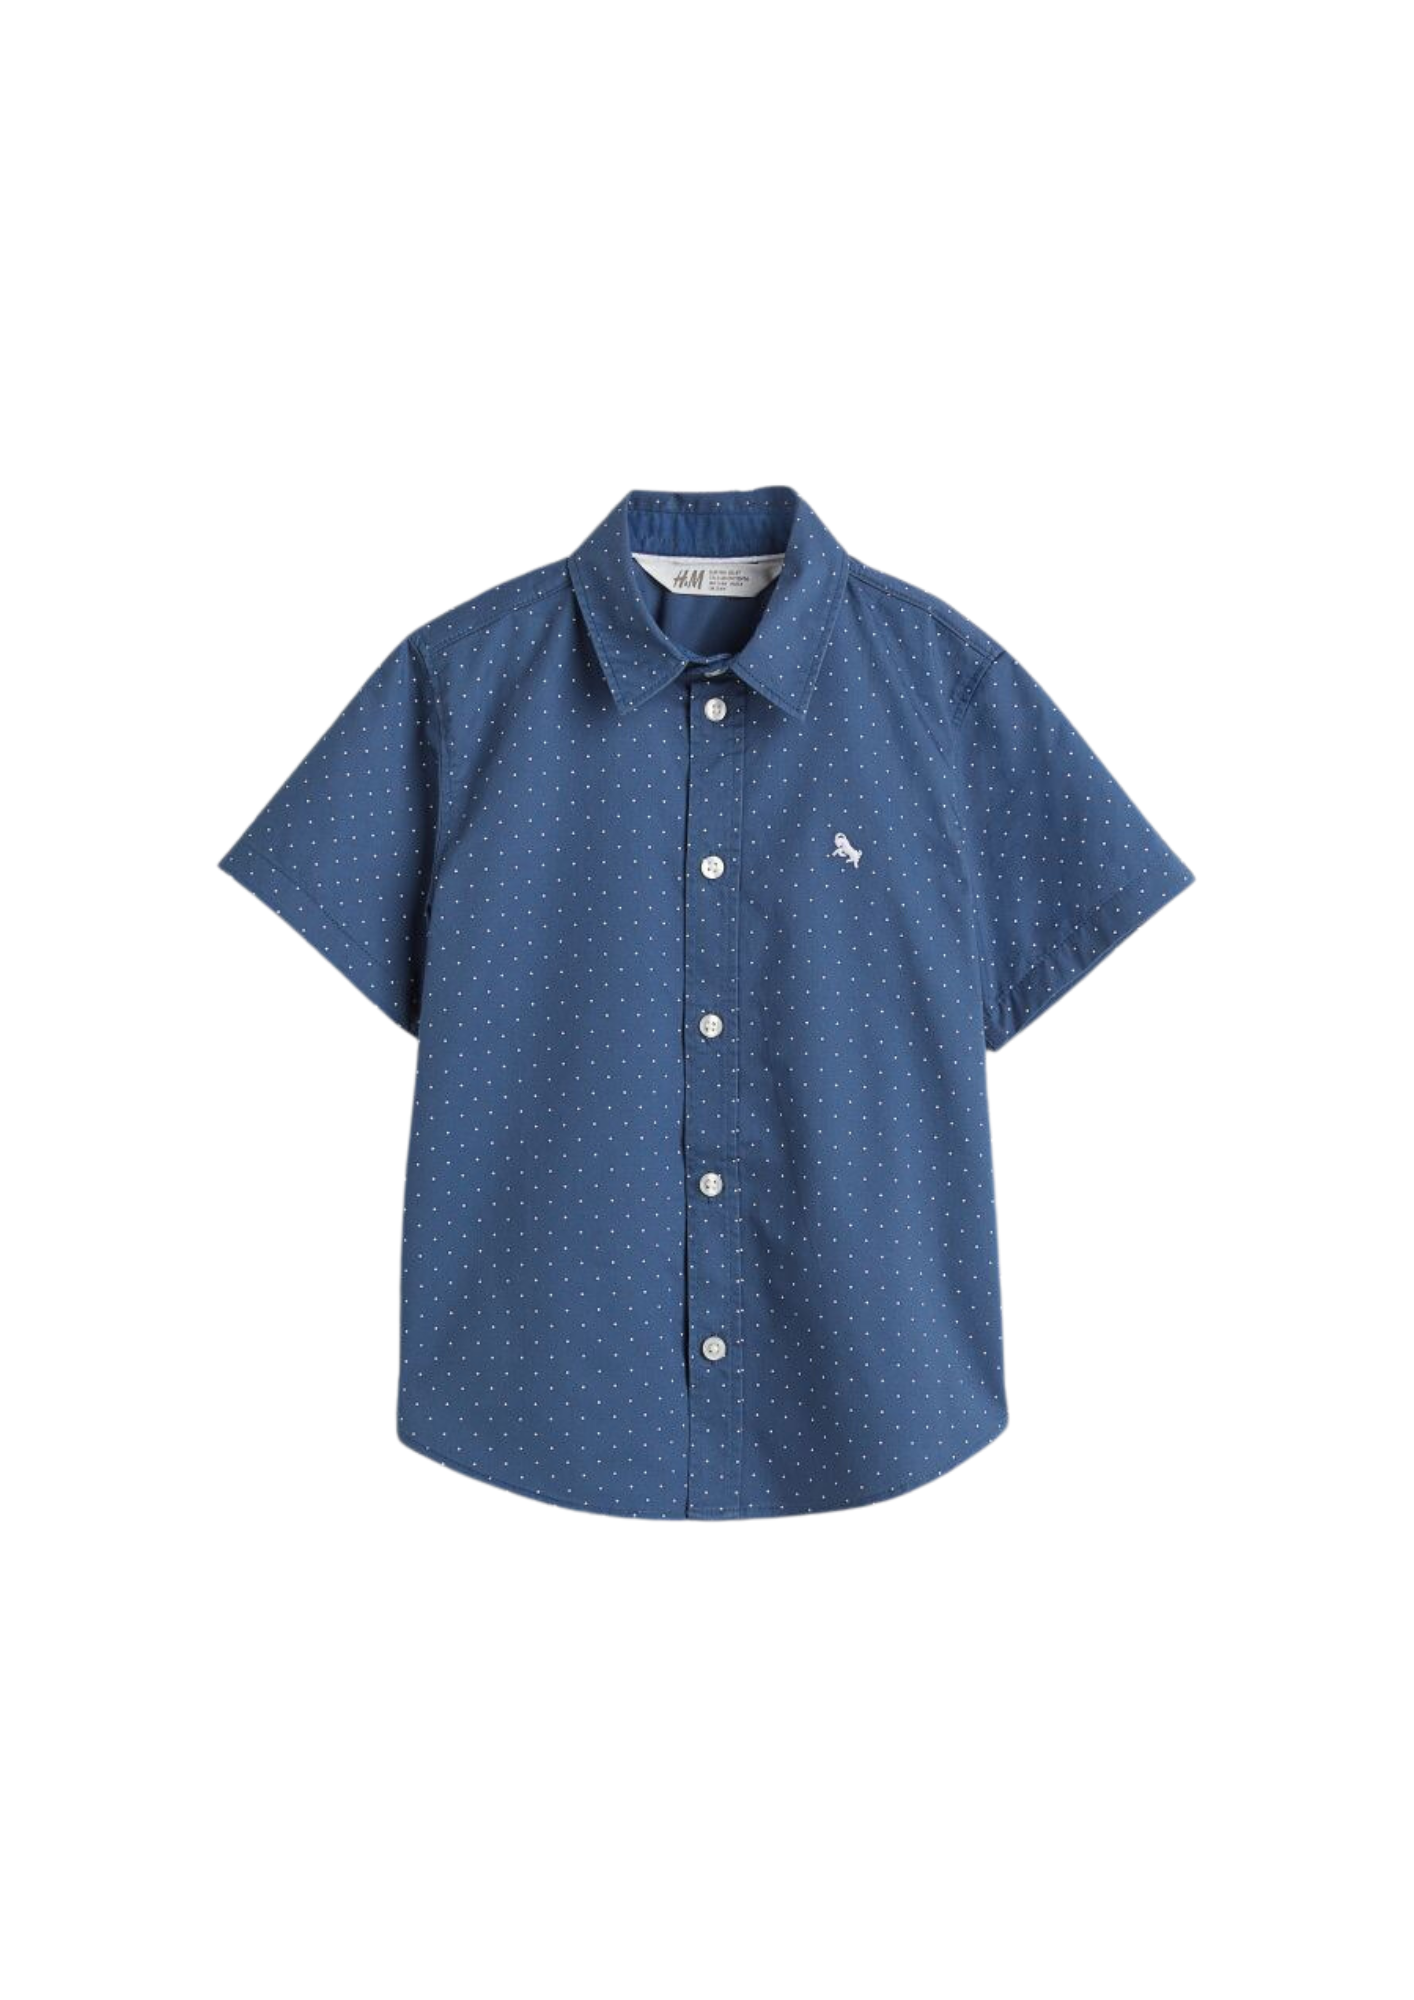 H&M - Camisa de mangas cortas color azul con motas blancas